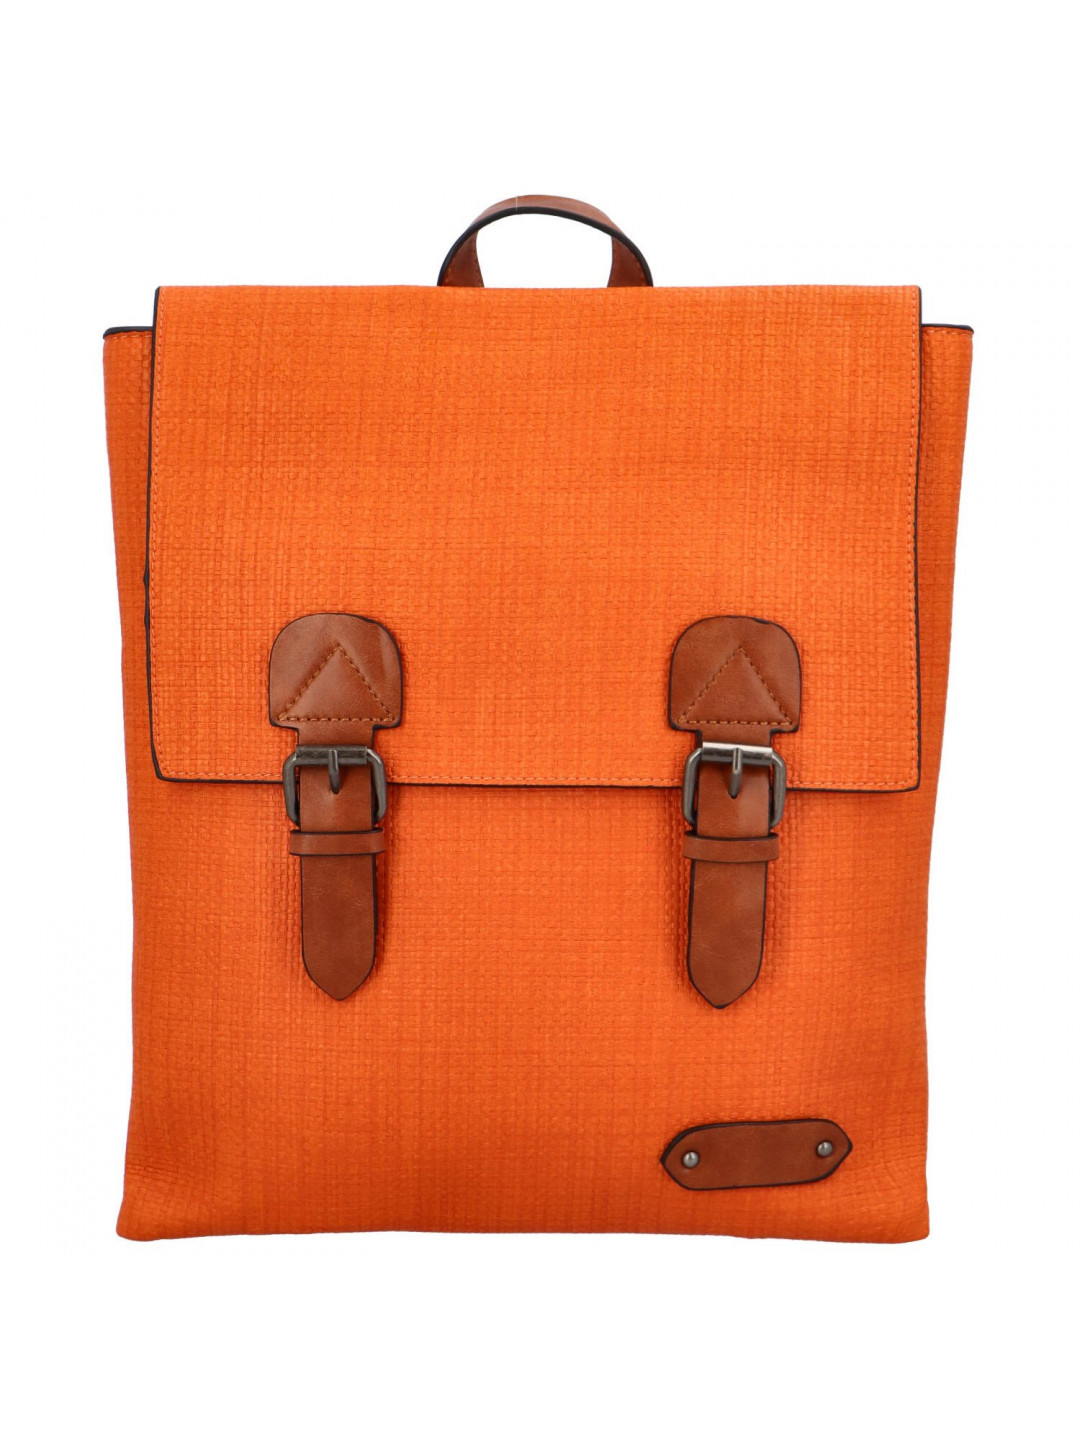 Trendový dámský koženkový batoh Nava oranžový